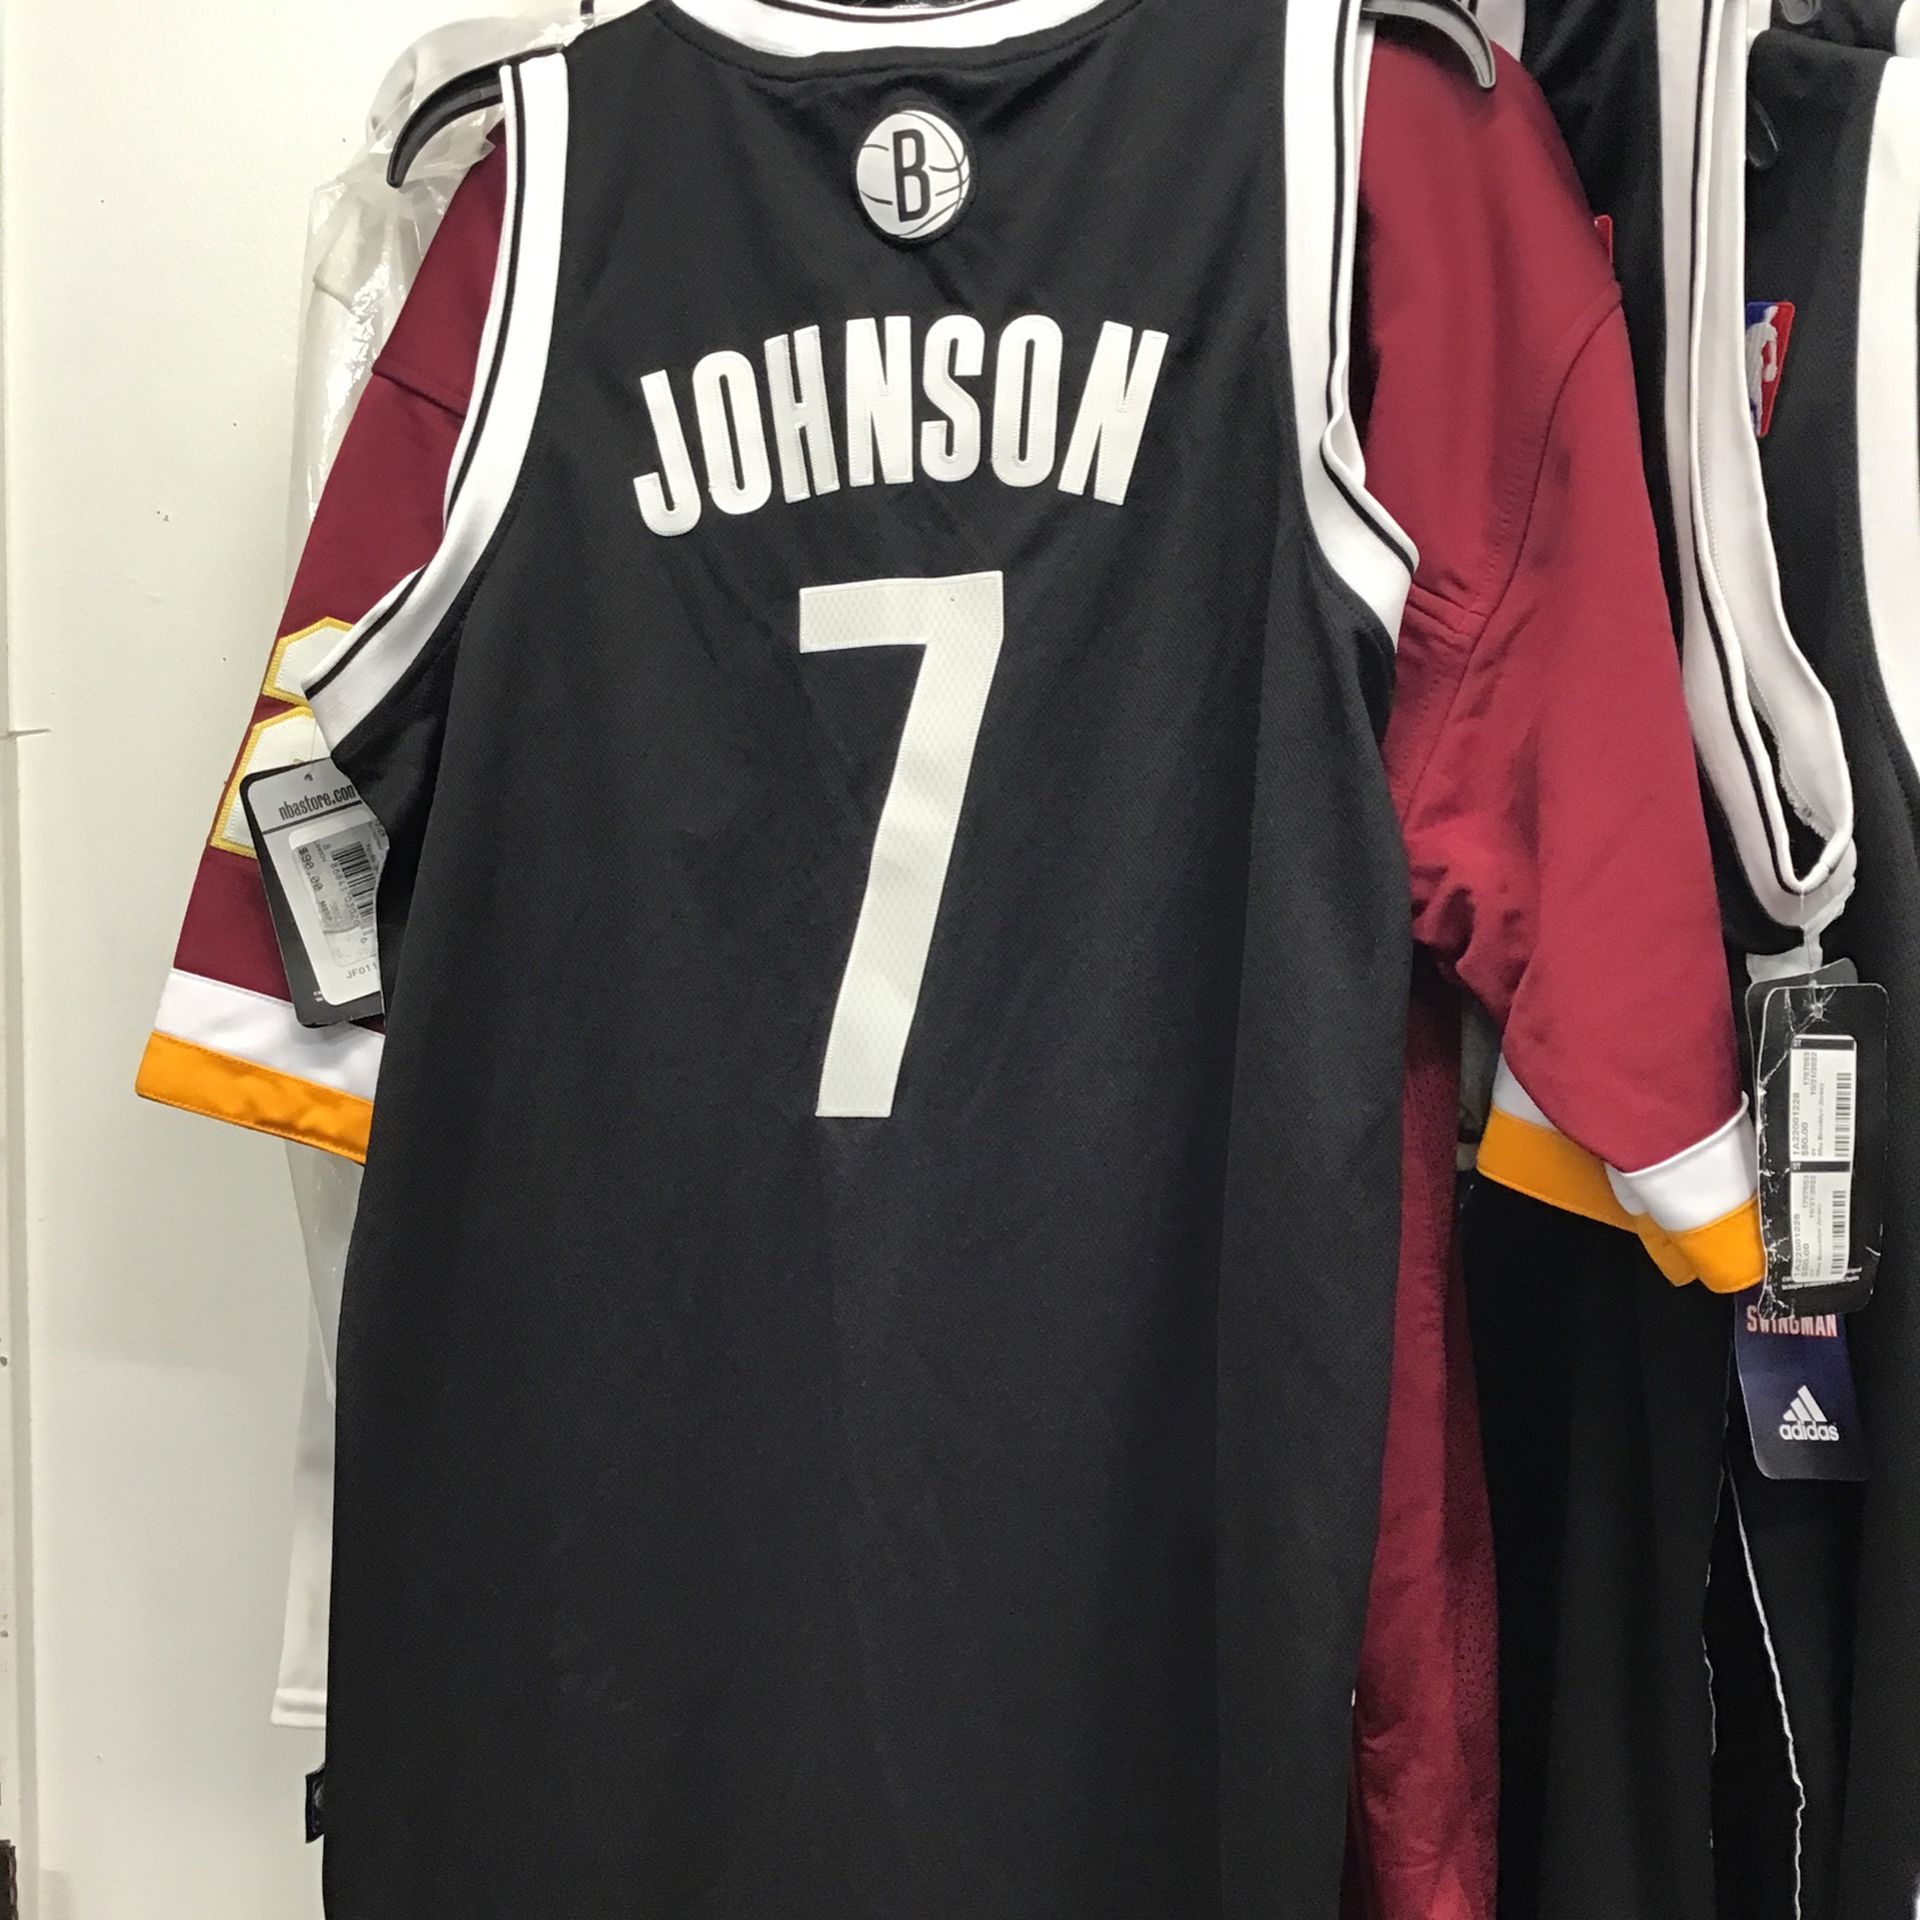 Joe Johnson Brooklyn Nets Adidas Basketball Jersey